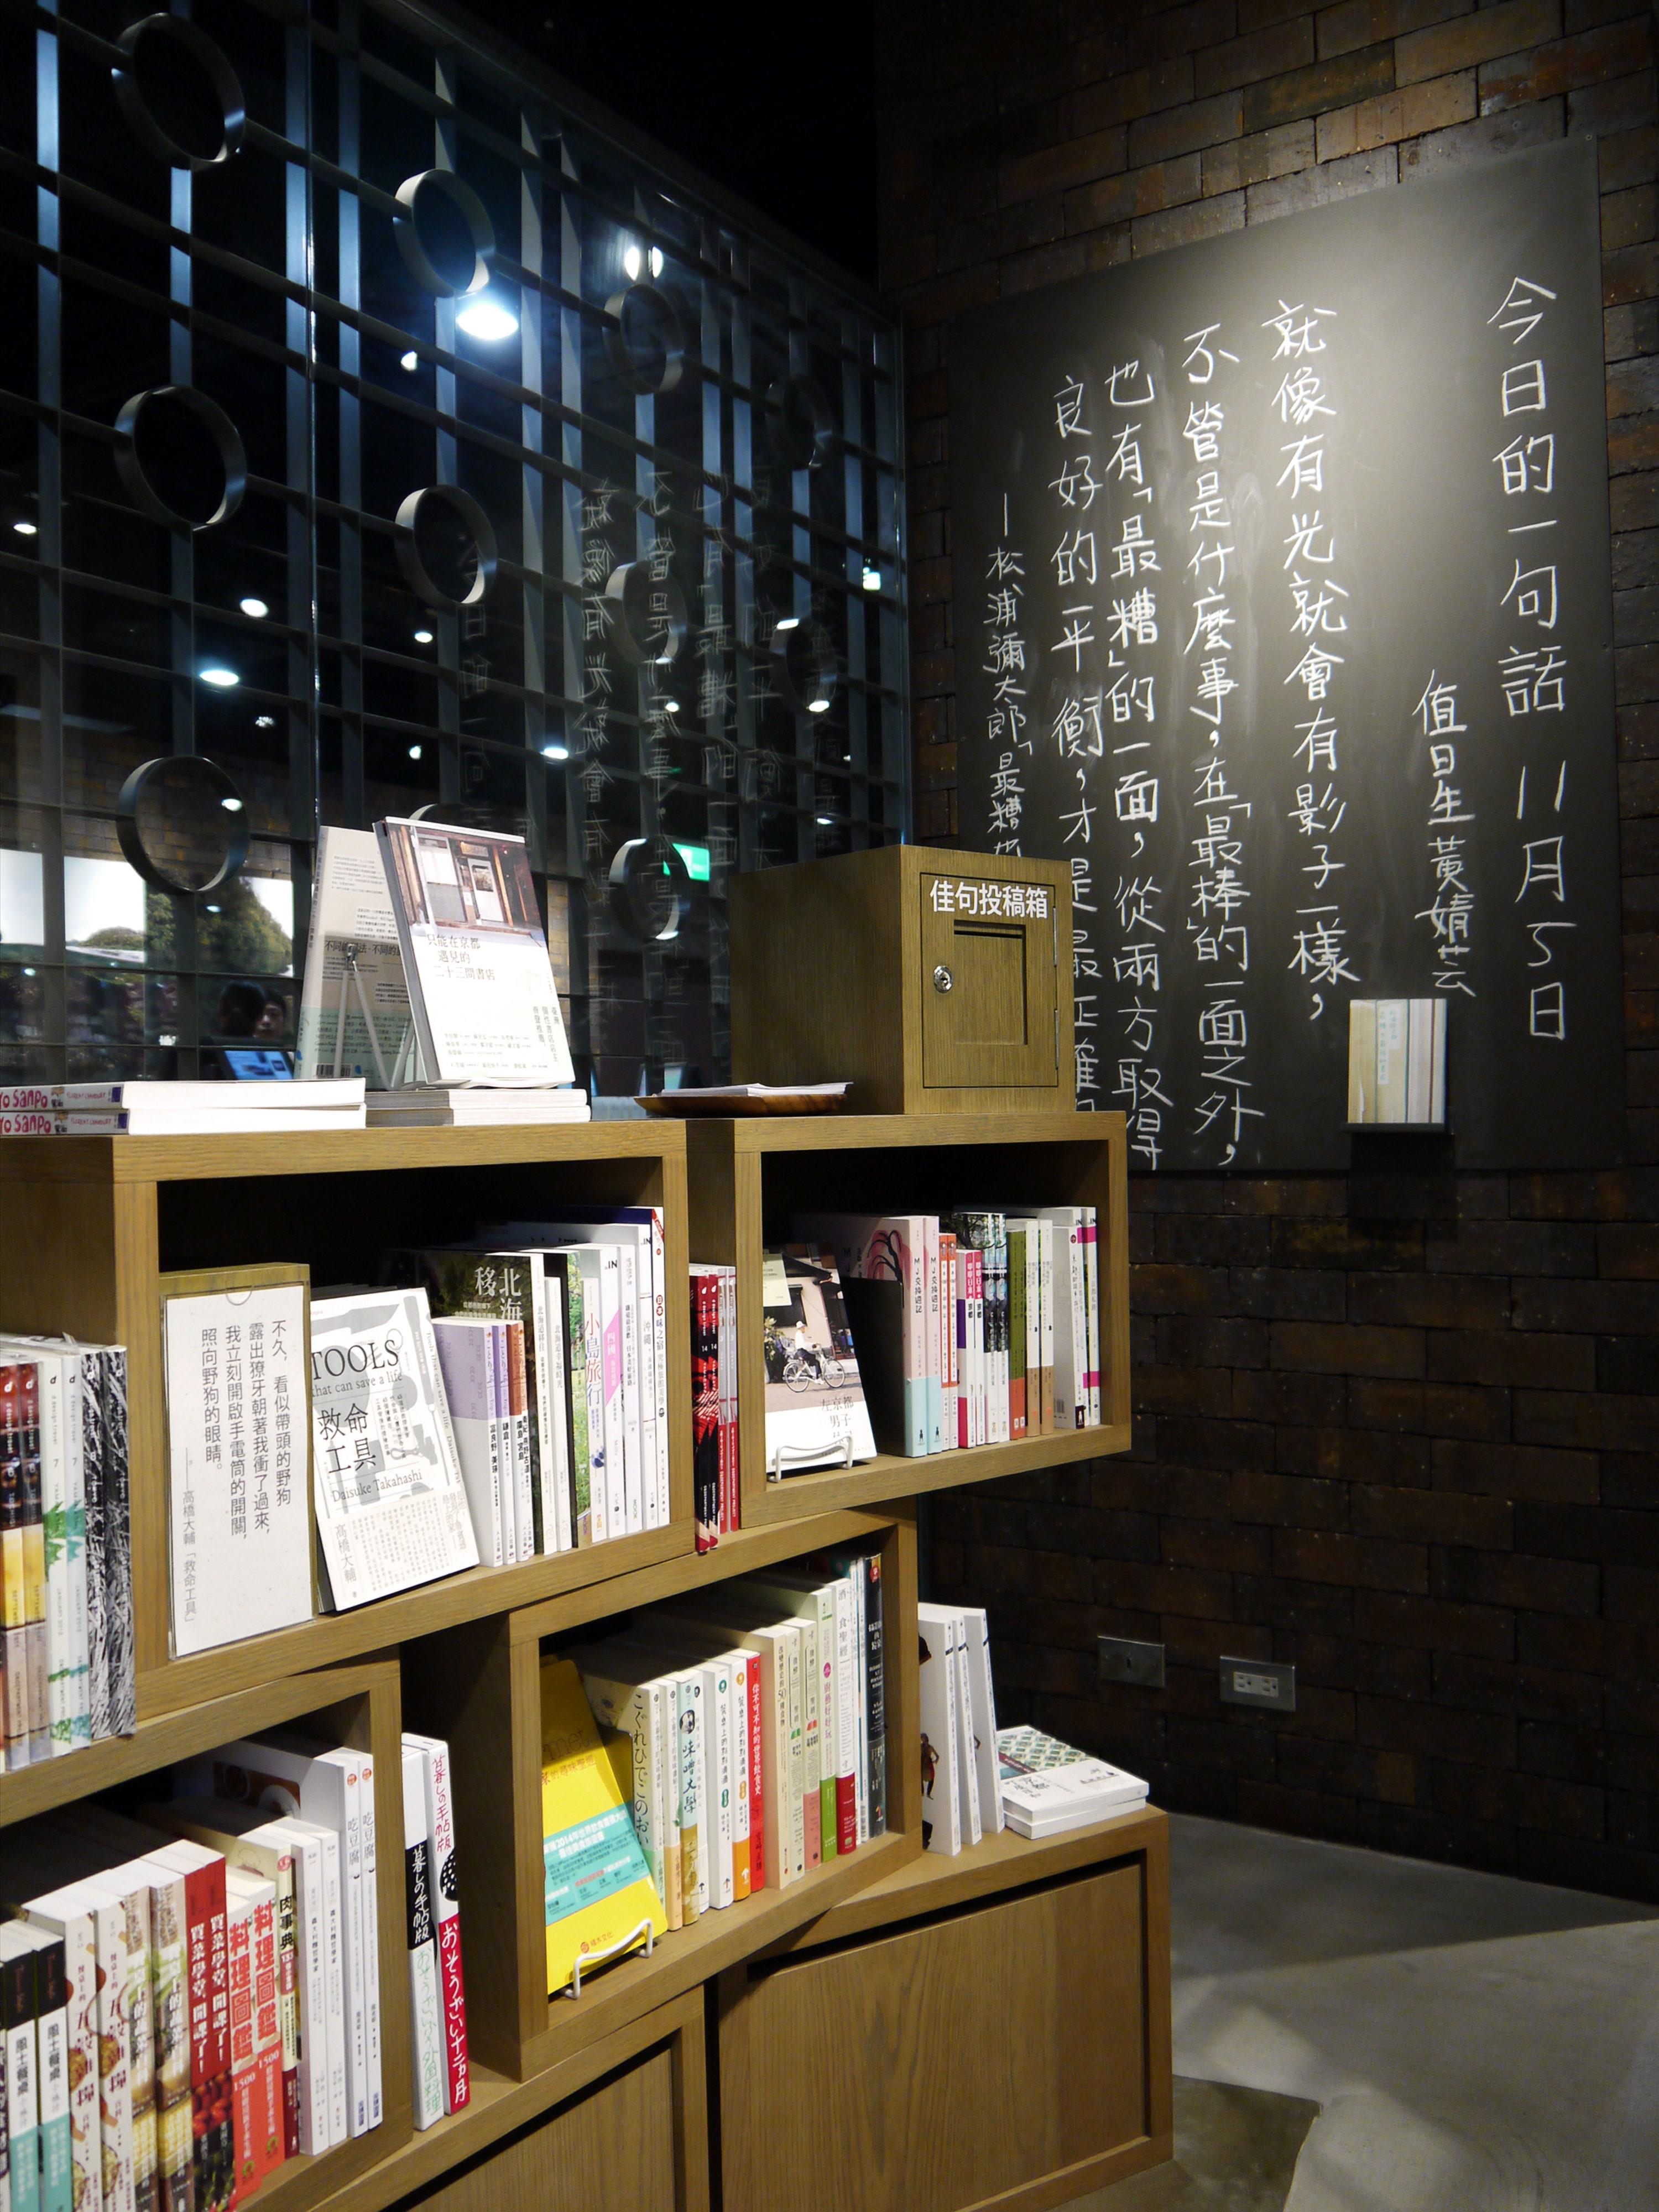 台南旗艦店MUJI BOOKS由選書團隊擔任「值日生」，挑出某本書中最愛的一段話，寫上黑板分享；你也可以動筆記下印象深刻的佳句，投入票箱，同樣有機會登上黑板。